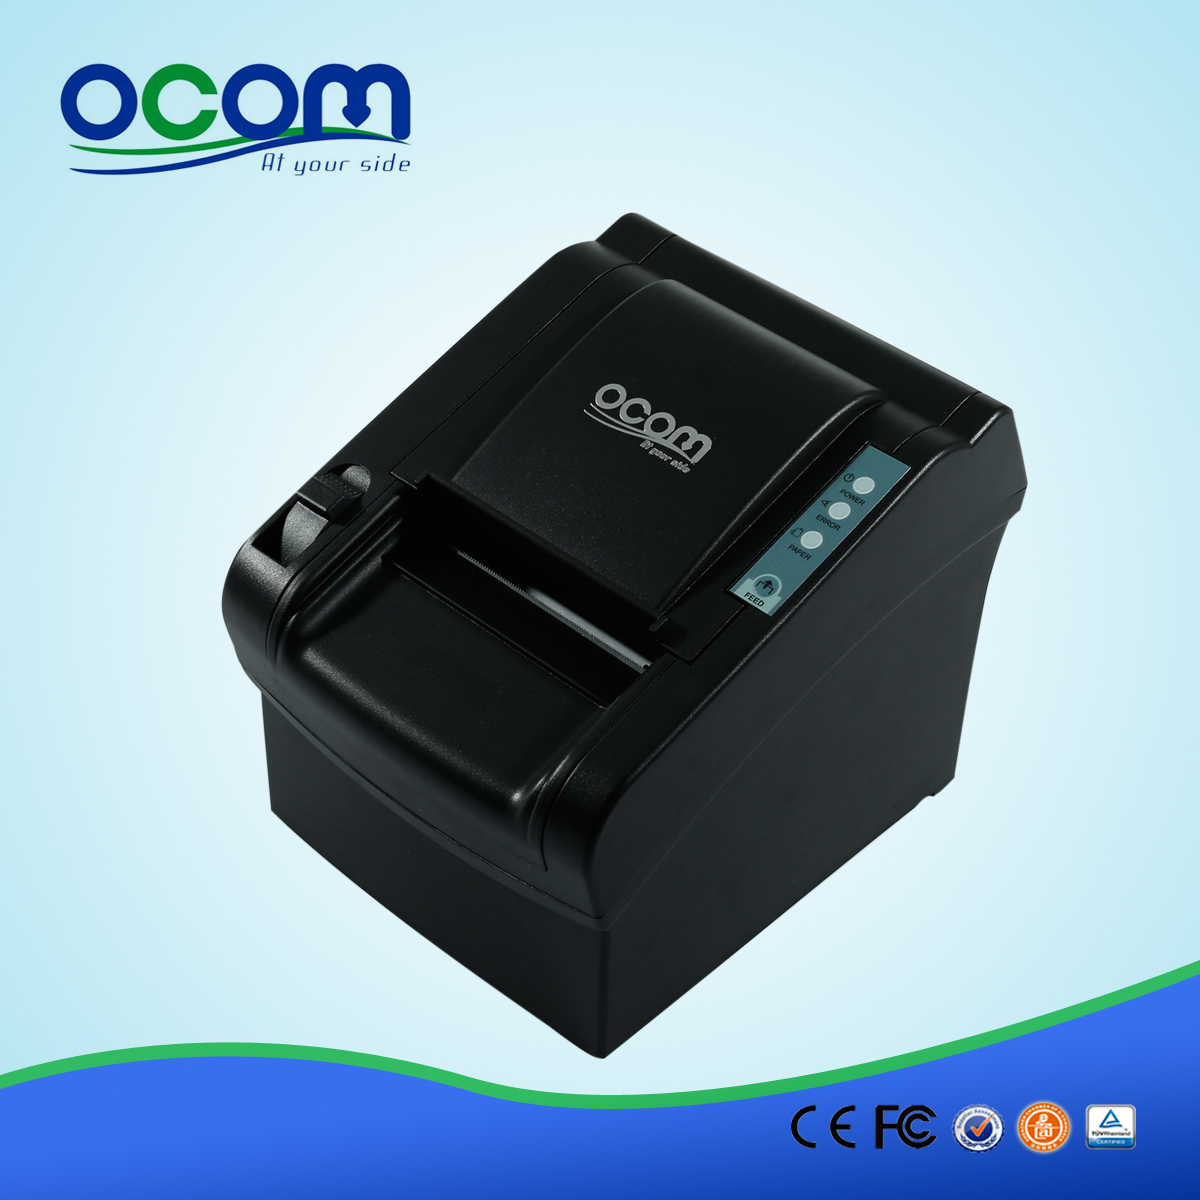 OCPP-802: pos de suministro módulo de impresión térmica, 80mm impresora térmica de recibos